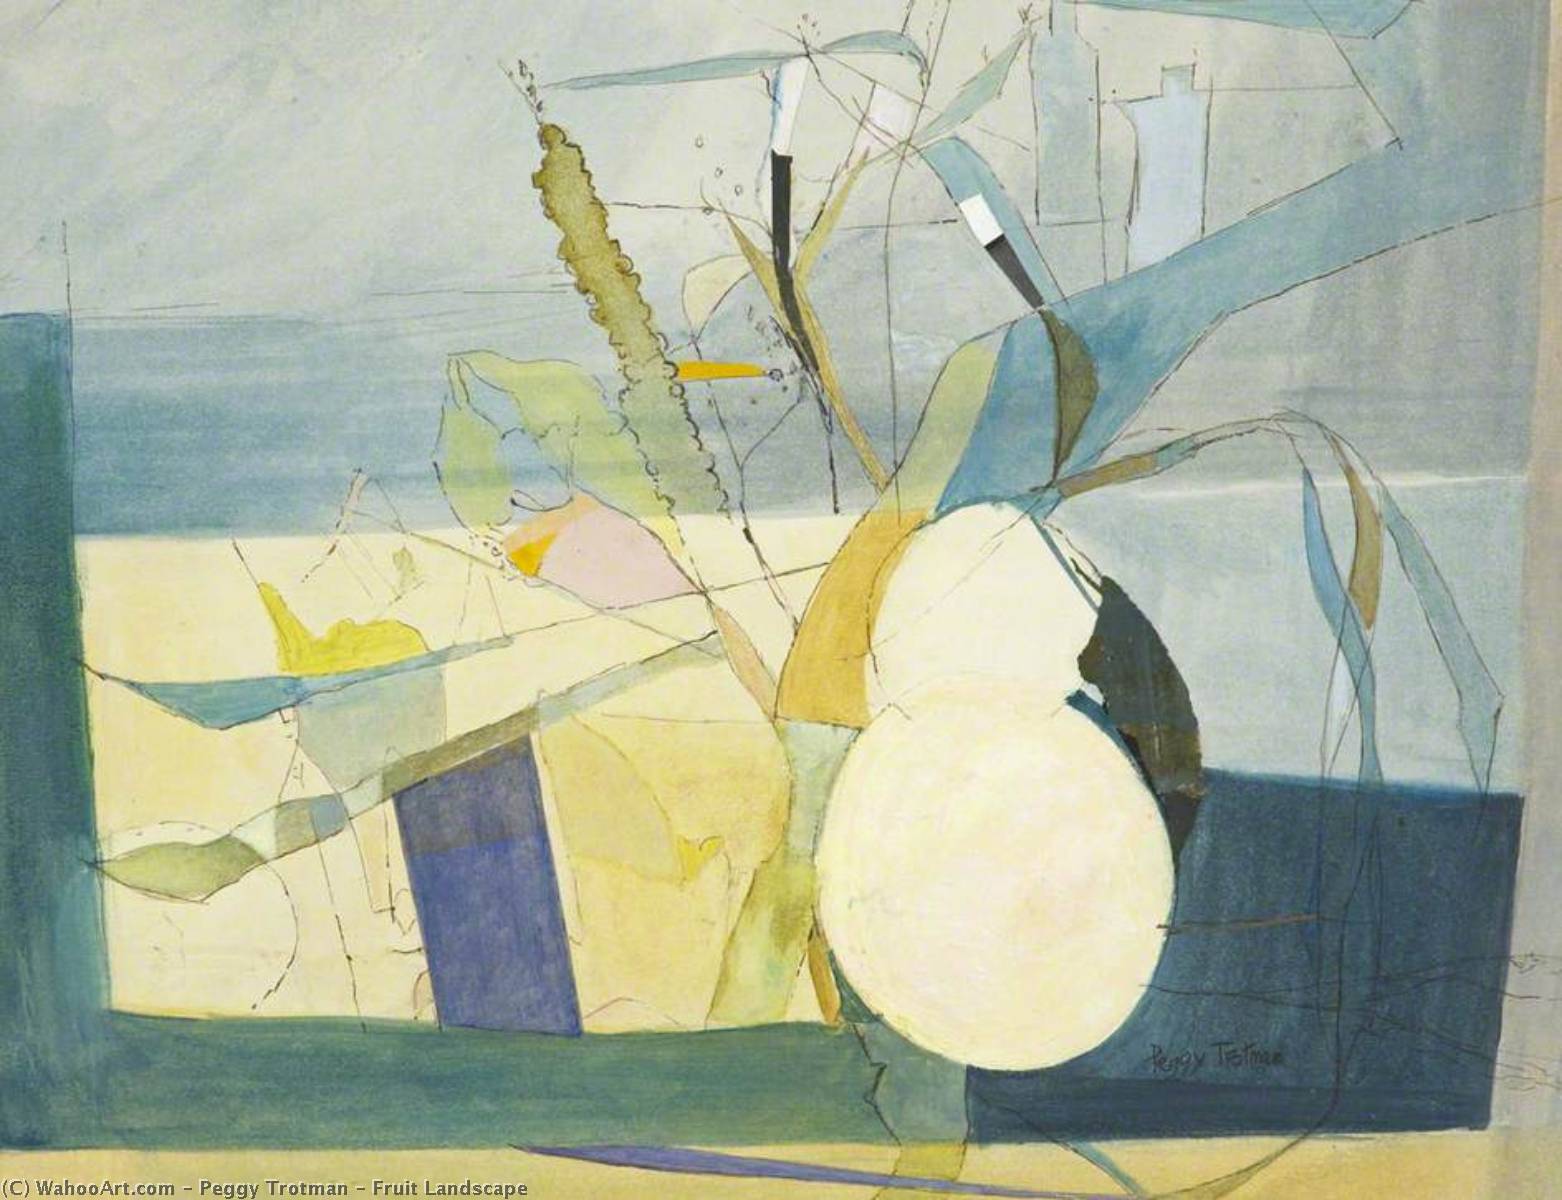 WikiOO.org - Encyclopedia of Fine Arts - Lukisan, Artwork Peggy Trotman - Fruit Landscape